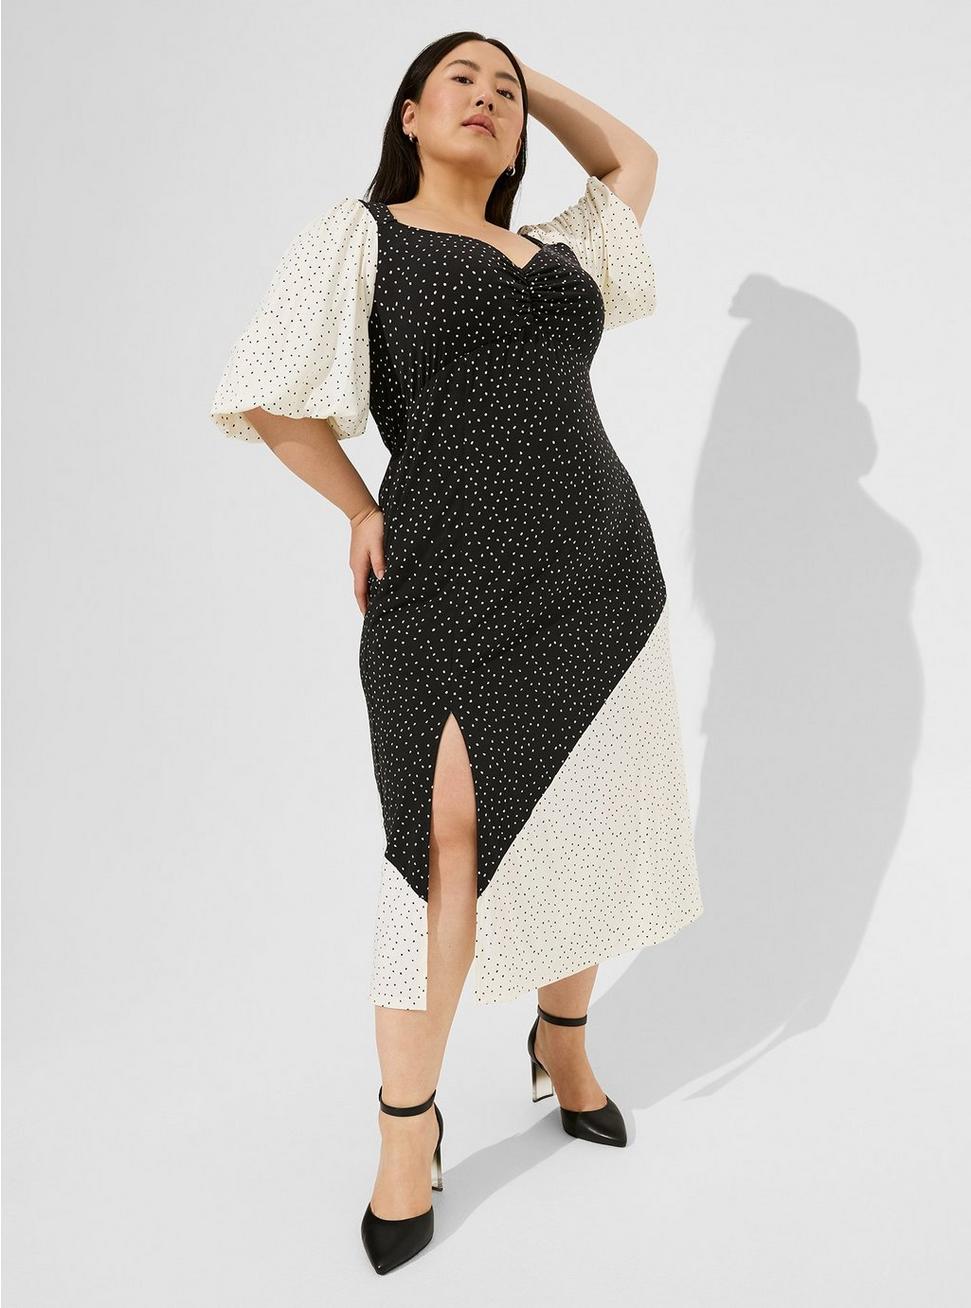 Maxi Studio Knit Mix Print Dress, DOT PRINT, hi-res